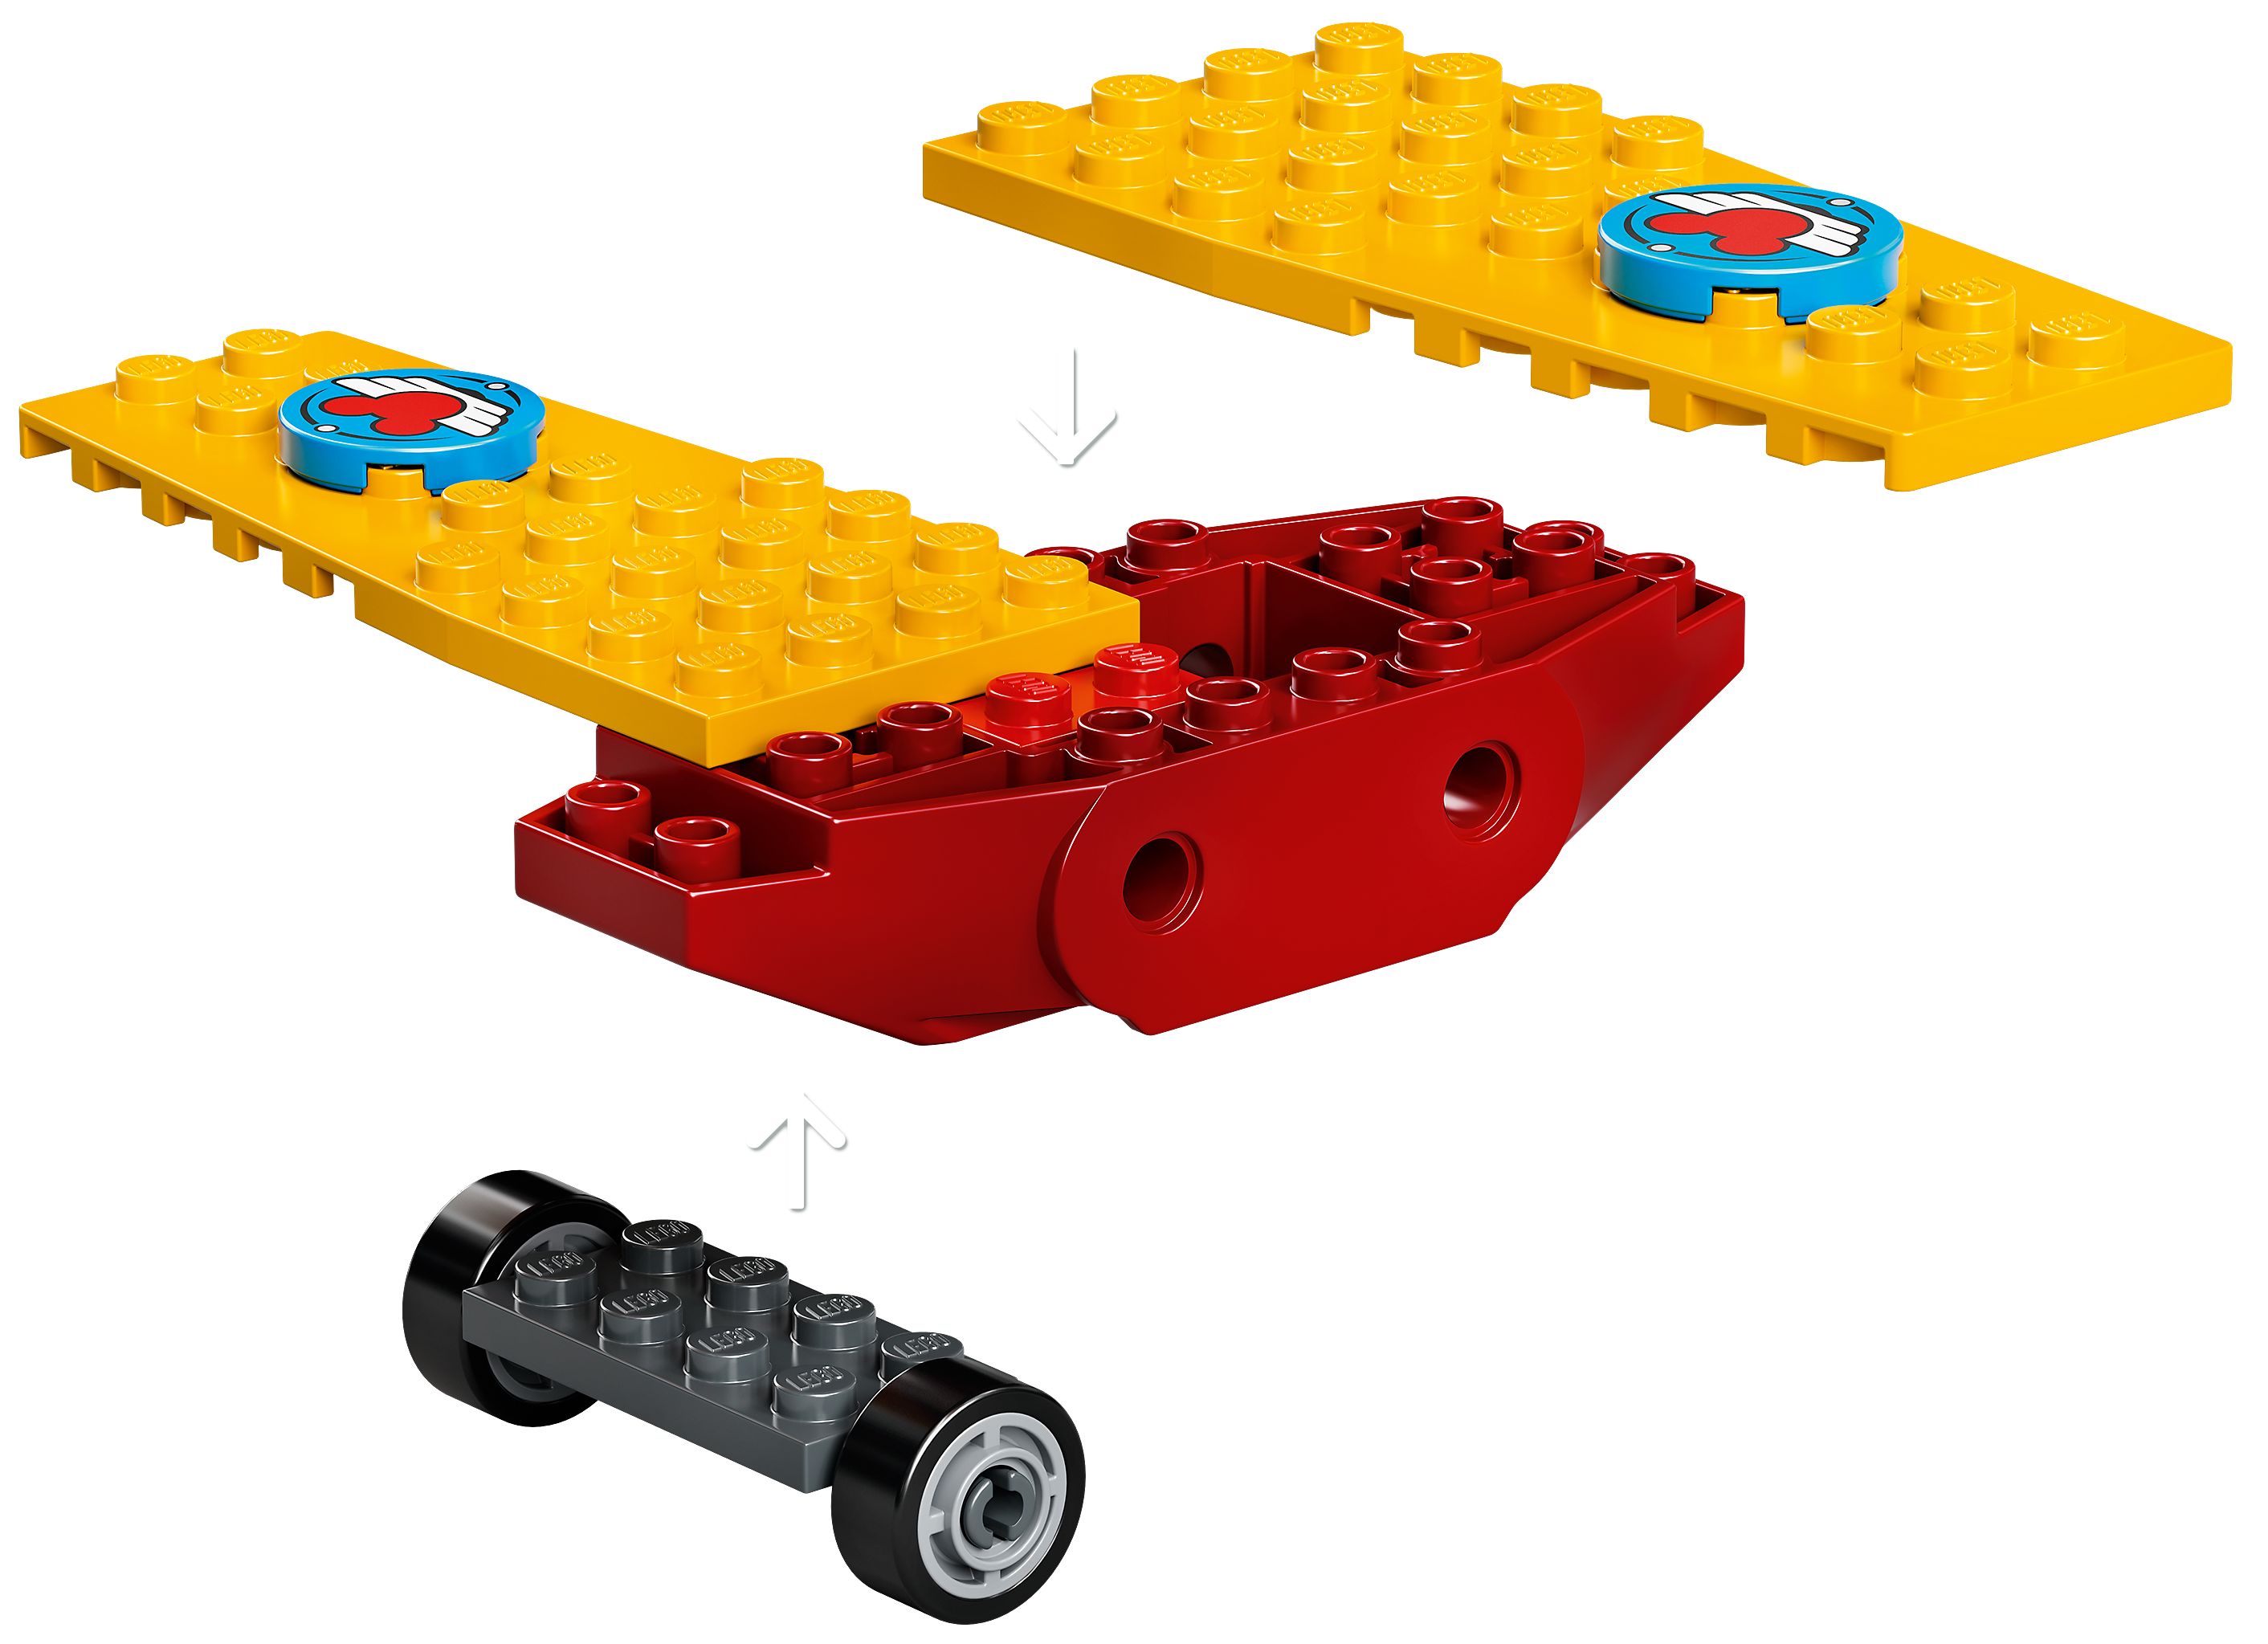 LEGO Disney 10772 Mickys Propellerflugzeug LEGO_10772_alt5.jpg